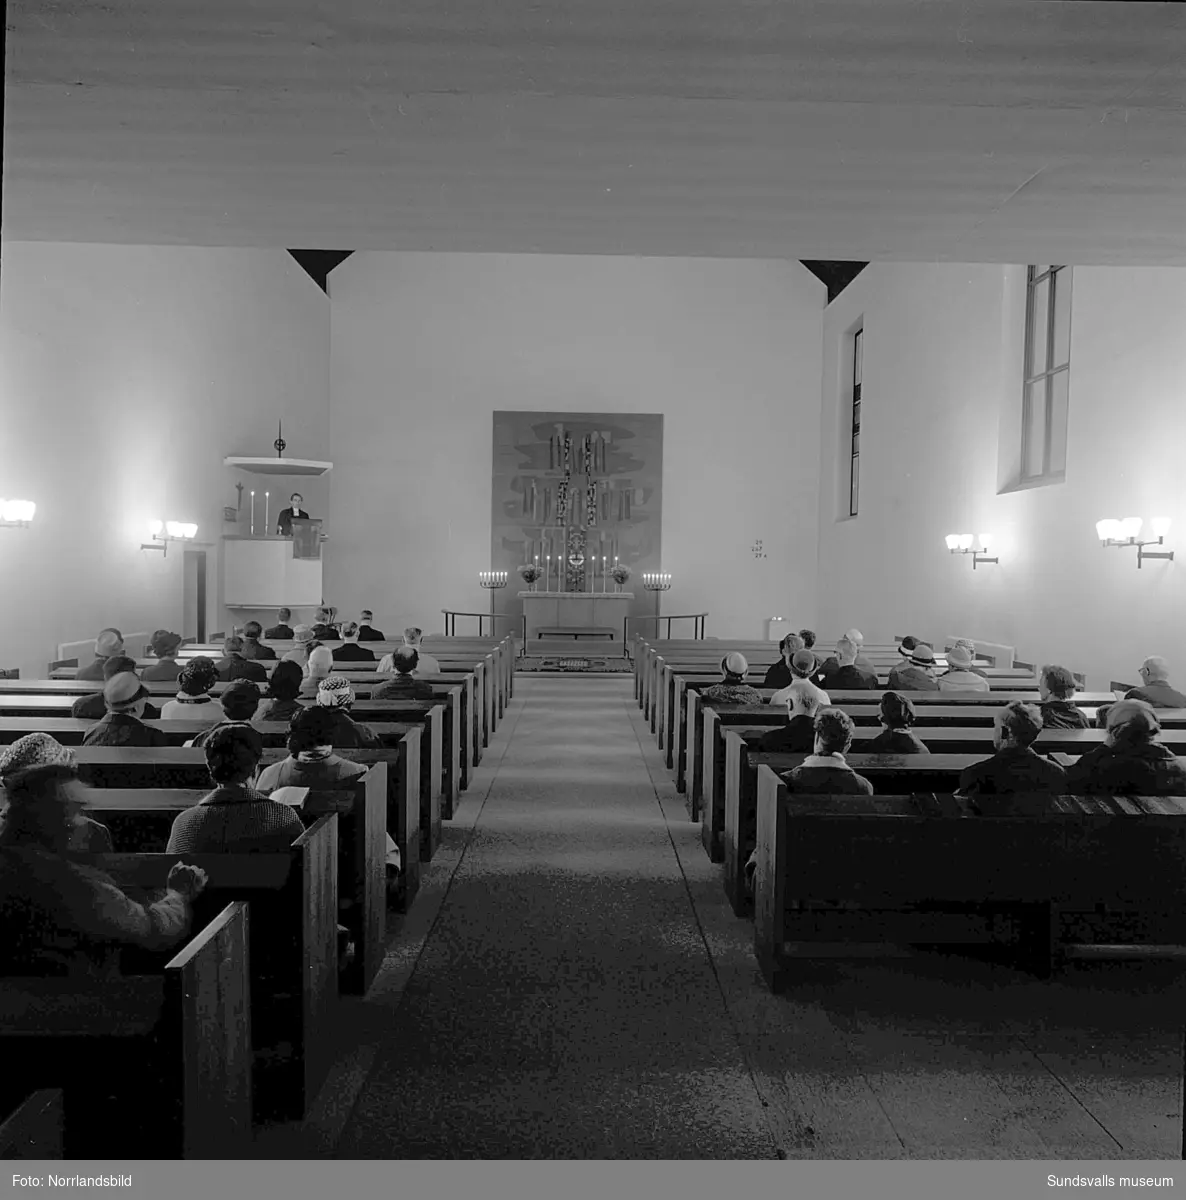 Minnesgudstjänst i Ånge kyrka efter tågkatastrofen i Alby då Nordpilen den 6/9 1964 i hög fart spårade ur och fortsatte in bland bebodda hus längs järnvägsvallen. Åtta personer omkom och 35 skadades.